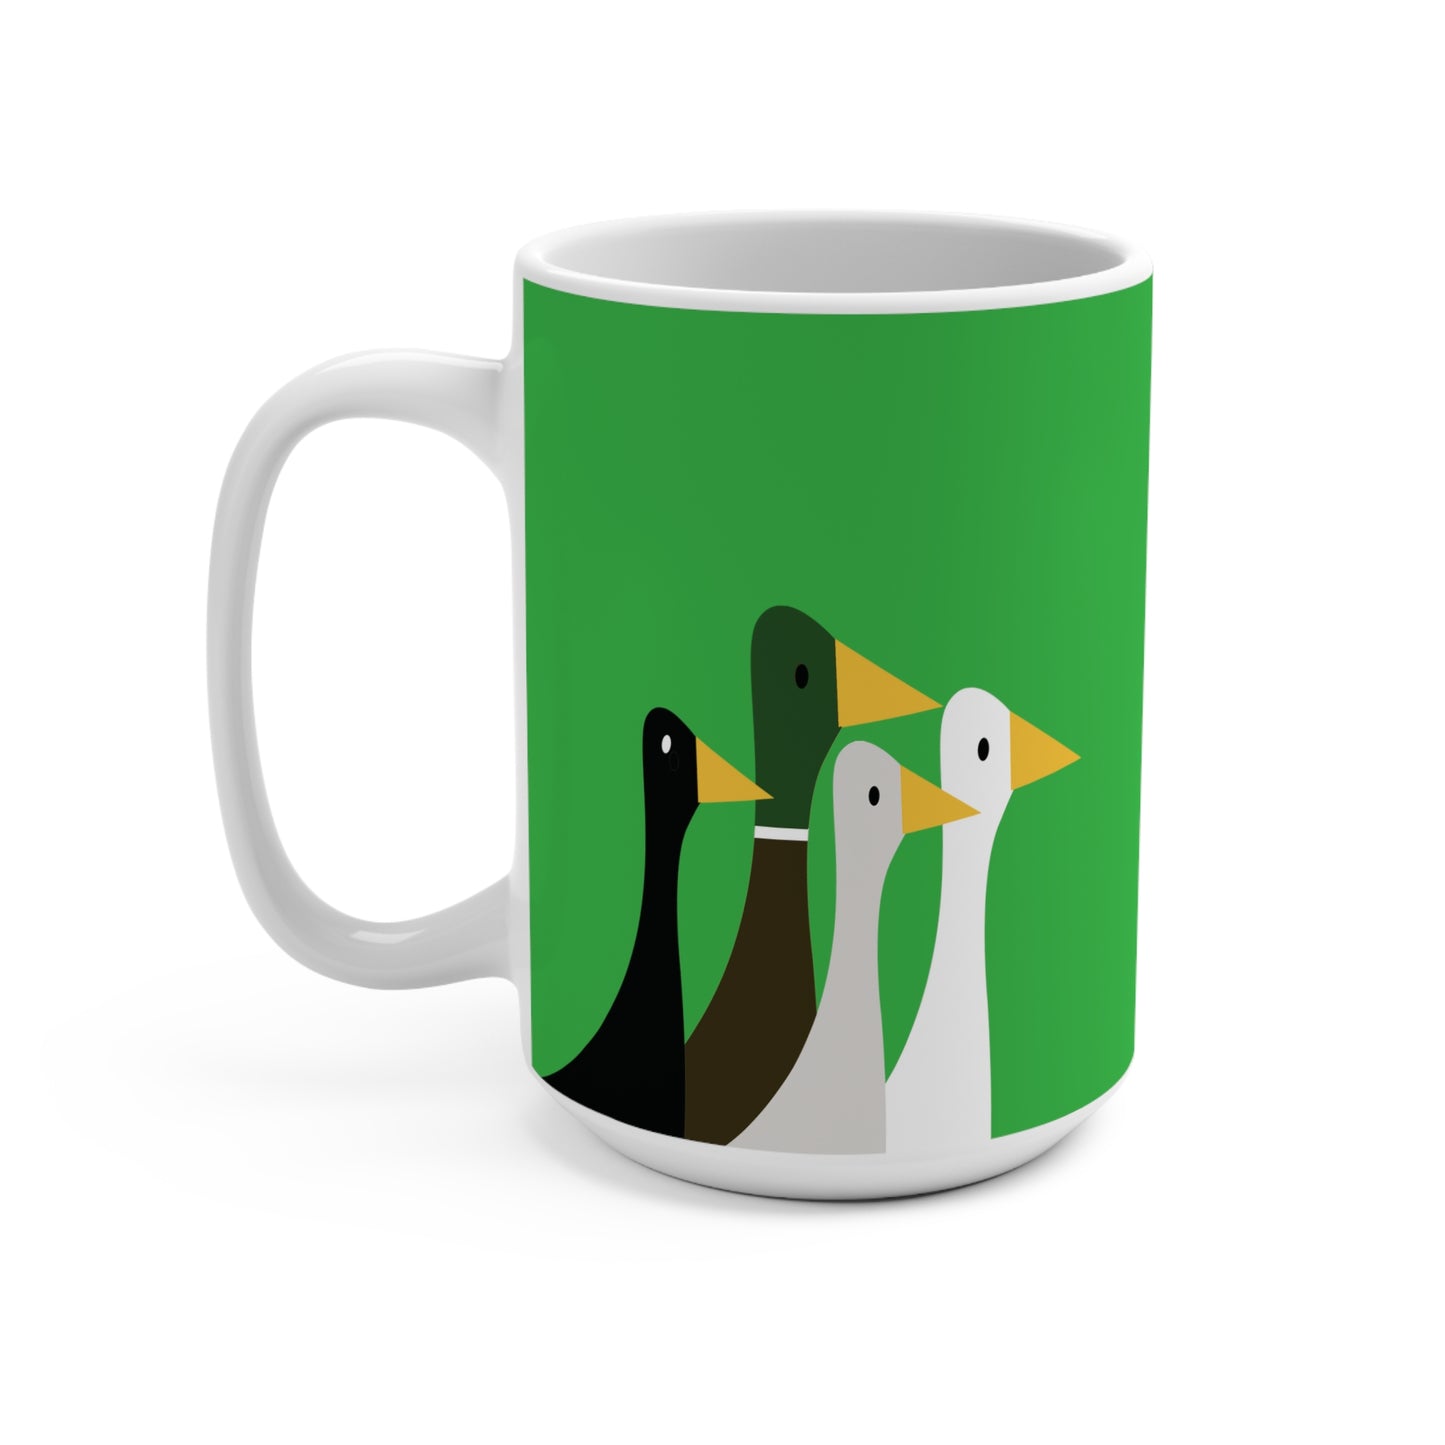 Take the ducks with you - Lime Green 21C12E - Mug 15oz